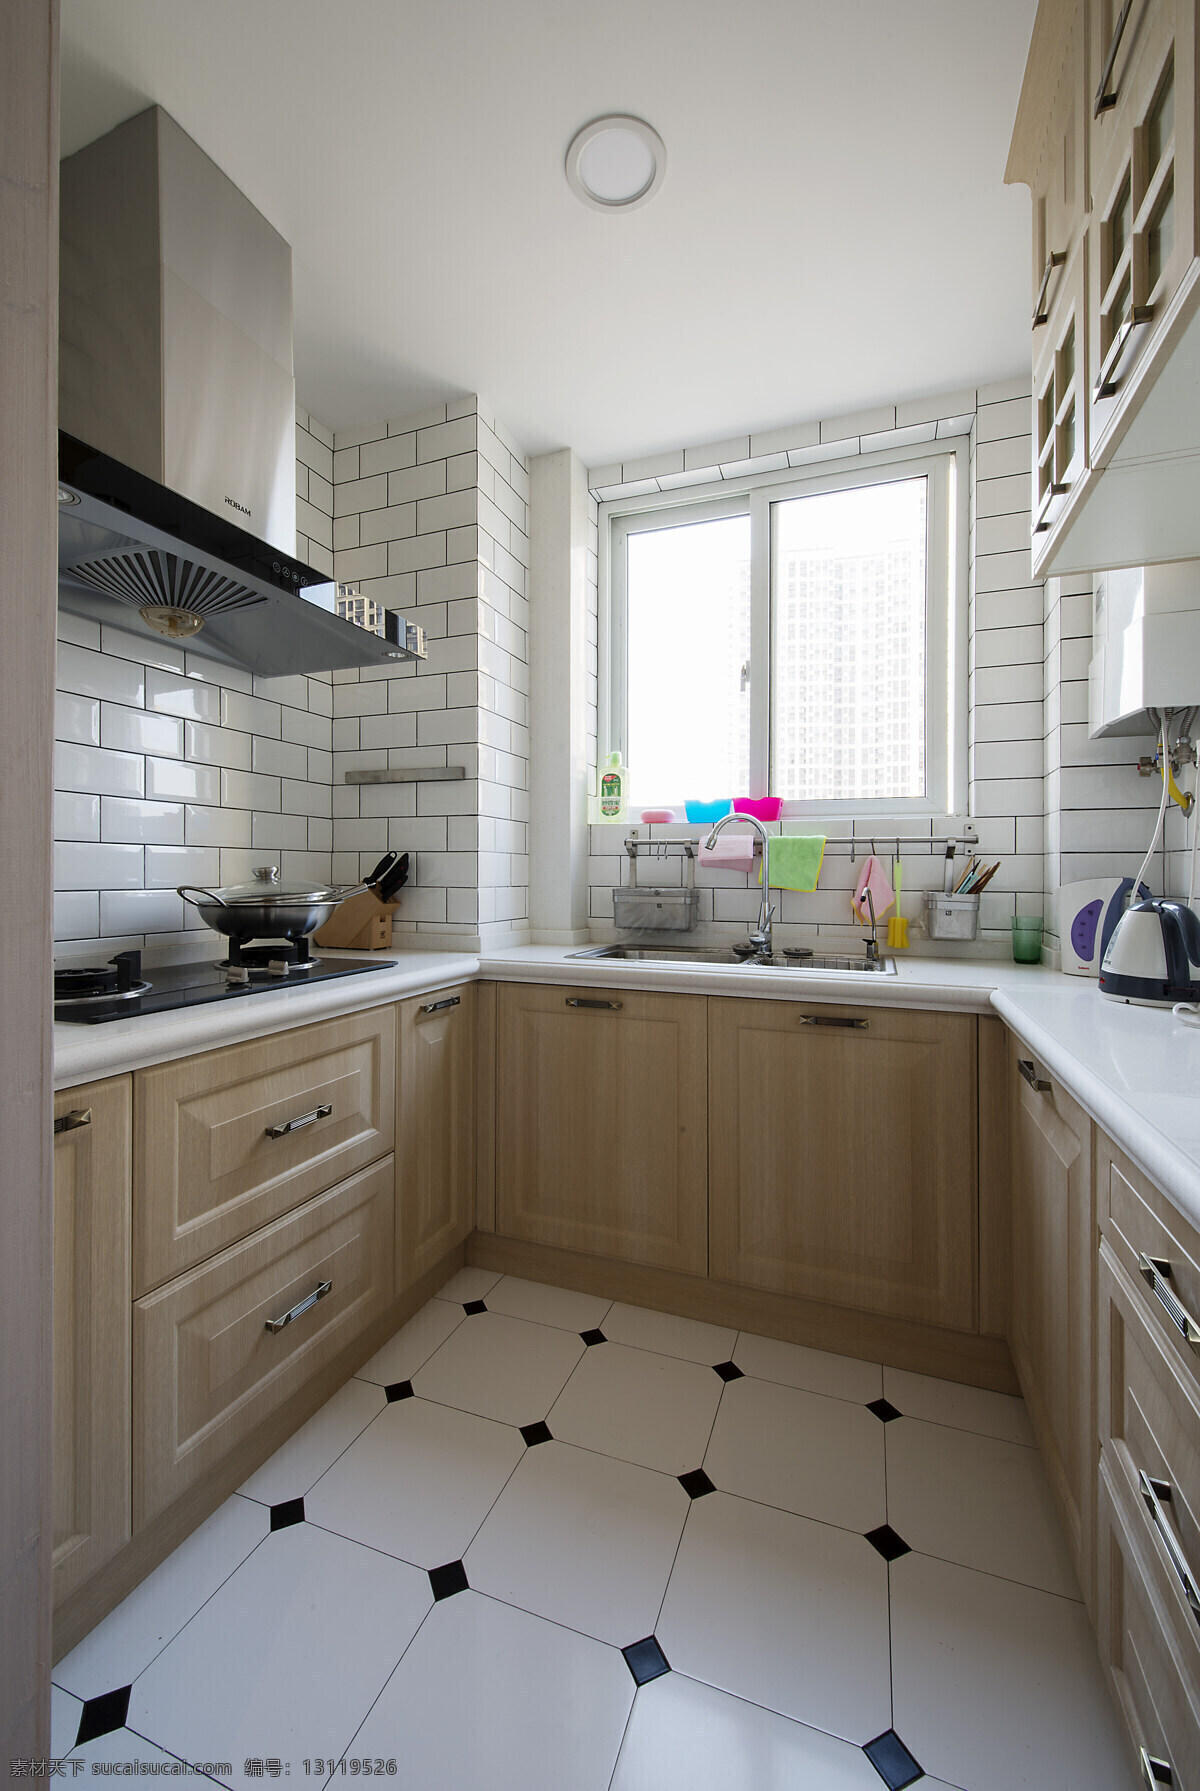 小 户型 现代 简约 风 厨房 装修 效果图 小户型 简约风 简洁 瓷砖墙面 瓷砖地面